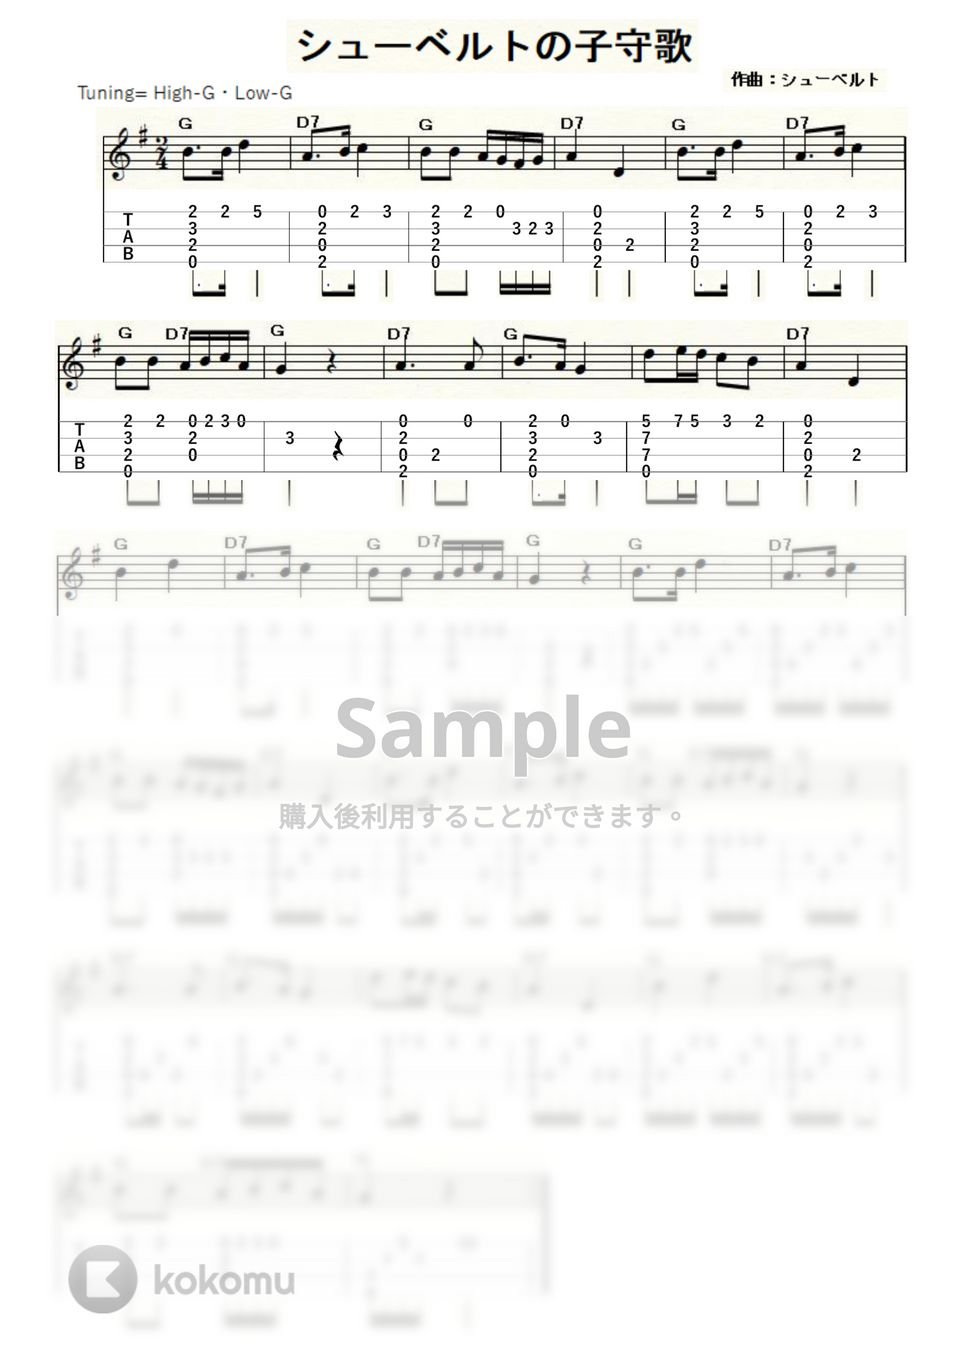 シューベルト - シューベルトの子守歌 (ｳｸﾚﾚｿﾛ / High-G・Low-G / 初級～中級) by ukulelepapa